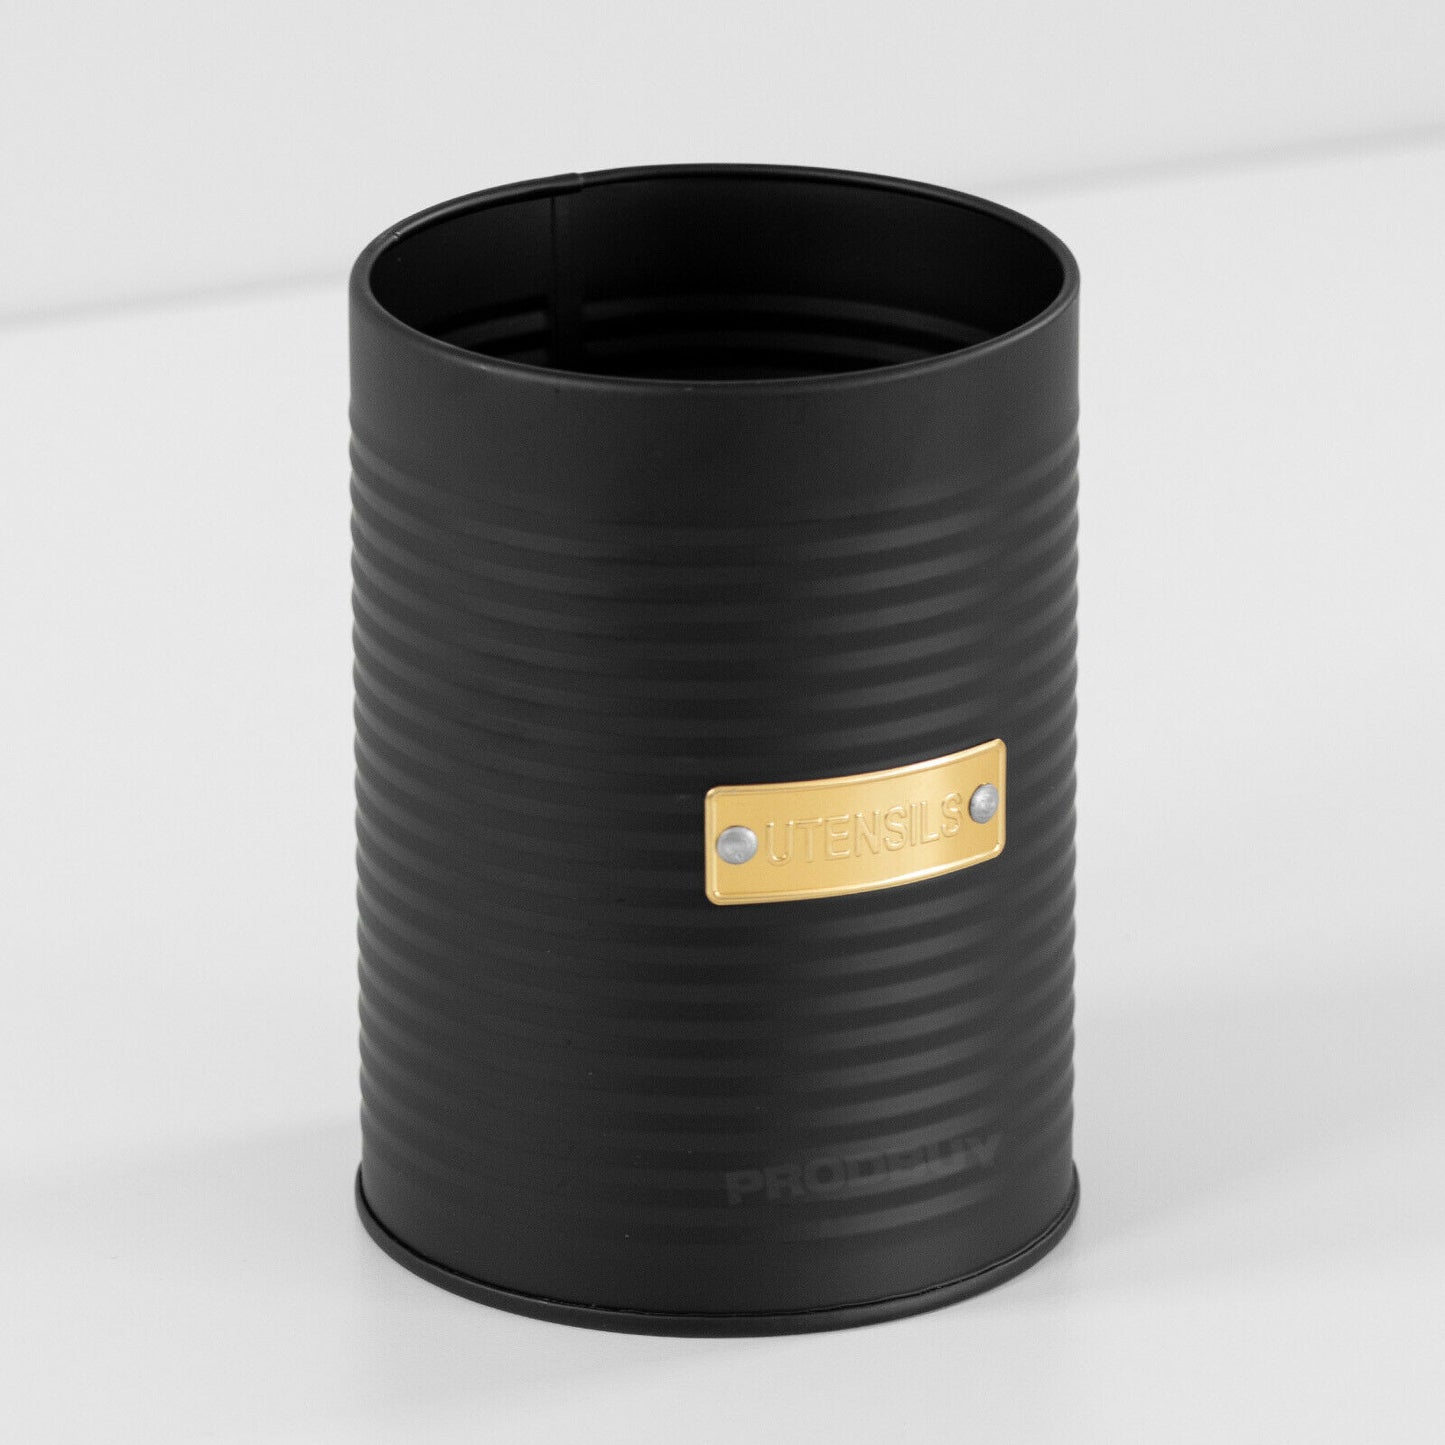 Black & Gold Kitchen Utensil Storage Pot